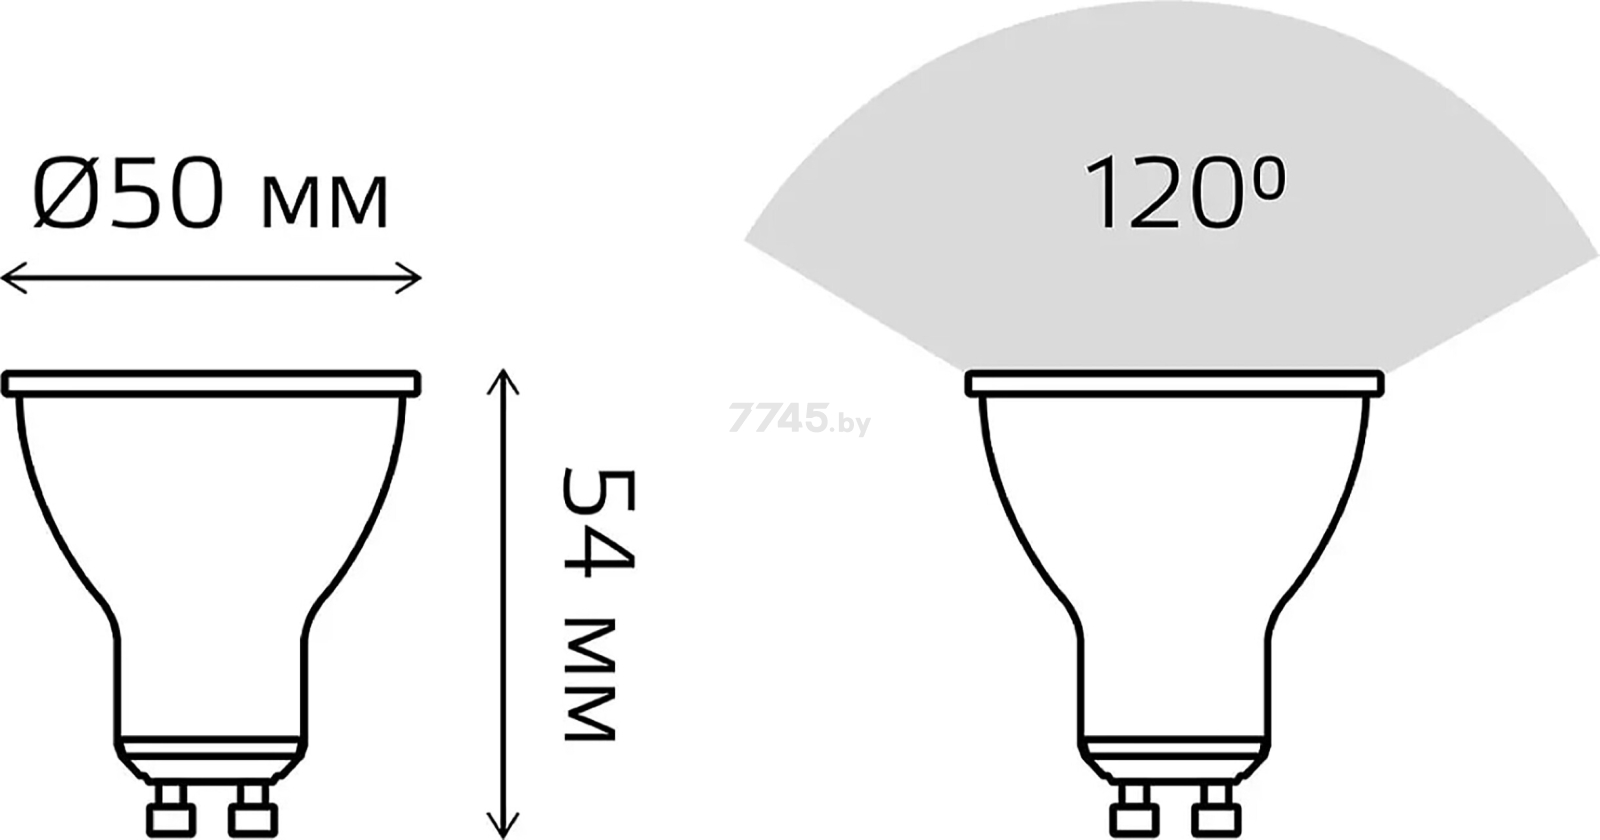 Лампа светодиодная GU10 GAUSS 5 Вт 2700К/3000K (101506105) - Фото 6